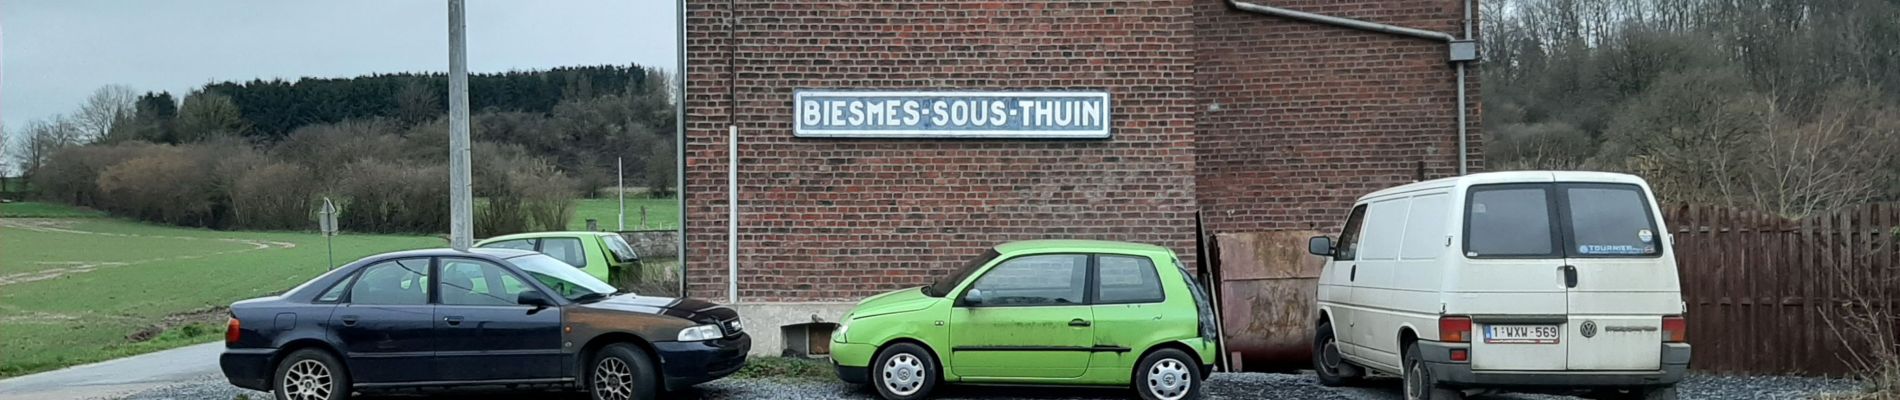 Percorso Marcia Thuin - Biesme sous Thuin 06 02 21 - Photo